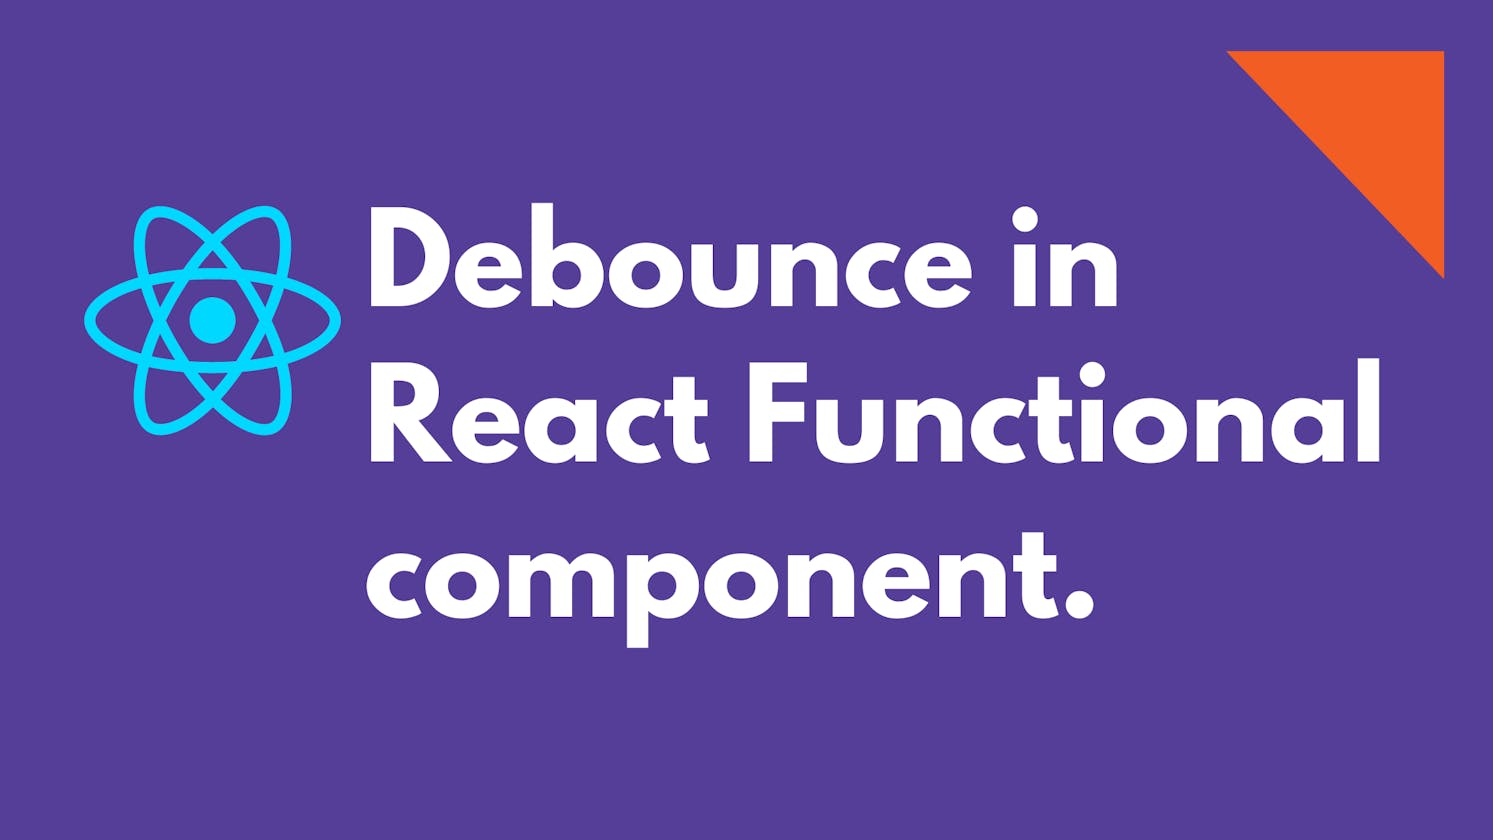 Debounce in React Functional component.